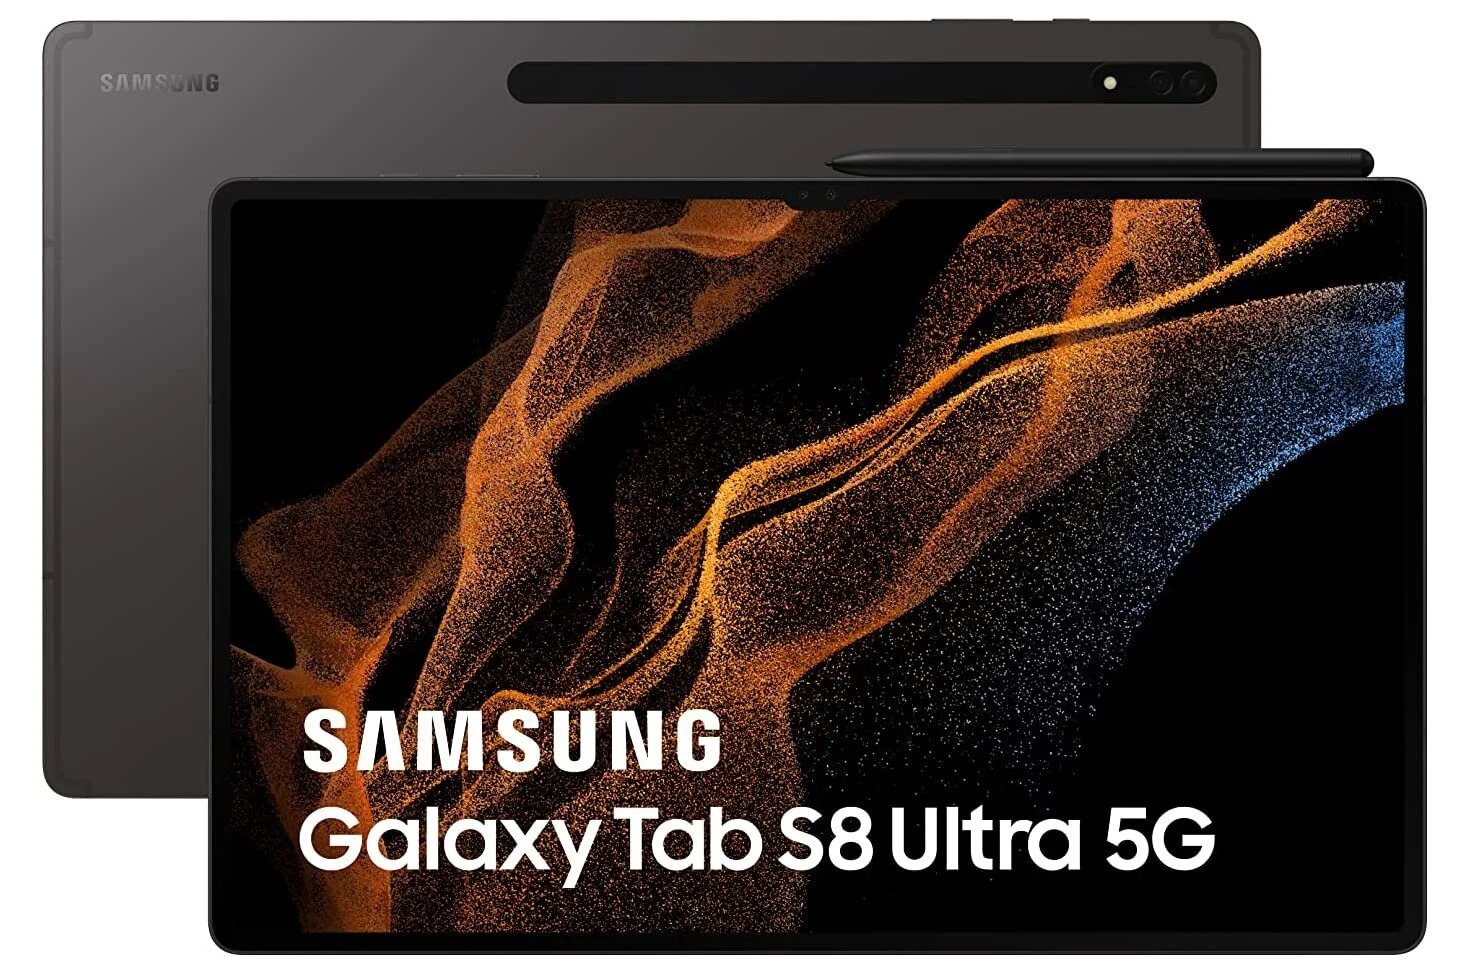 Galaxy Tab S8